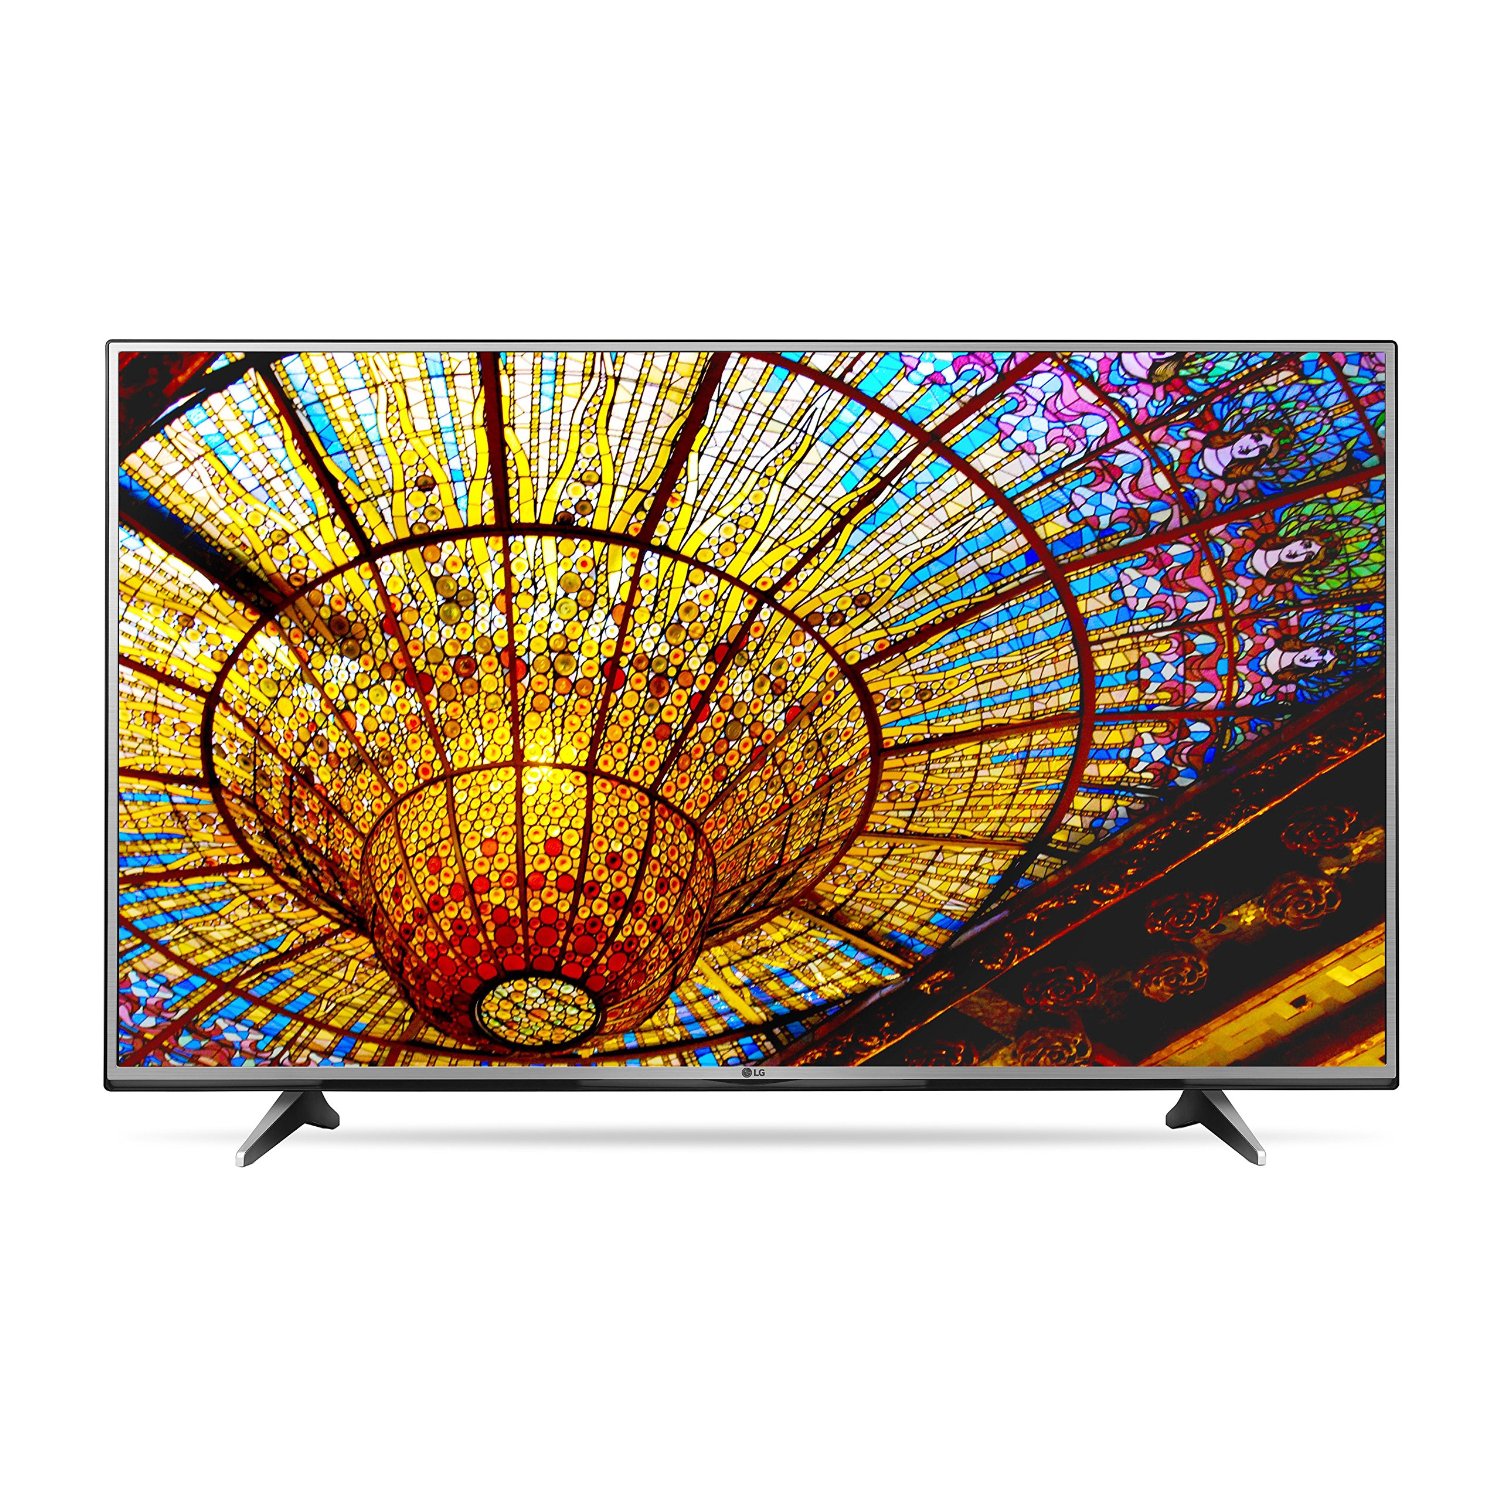 LG Electronics 55UH6150 55-Inch 4K Ultra HD Smart LED TV (2016 Model)